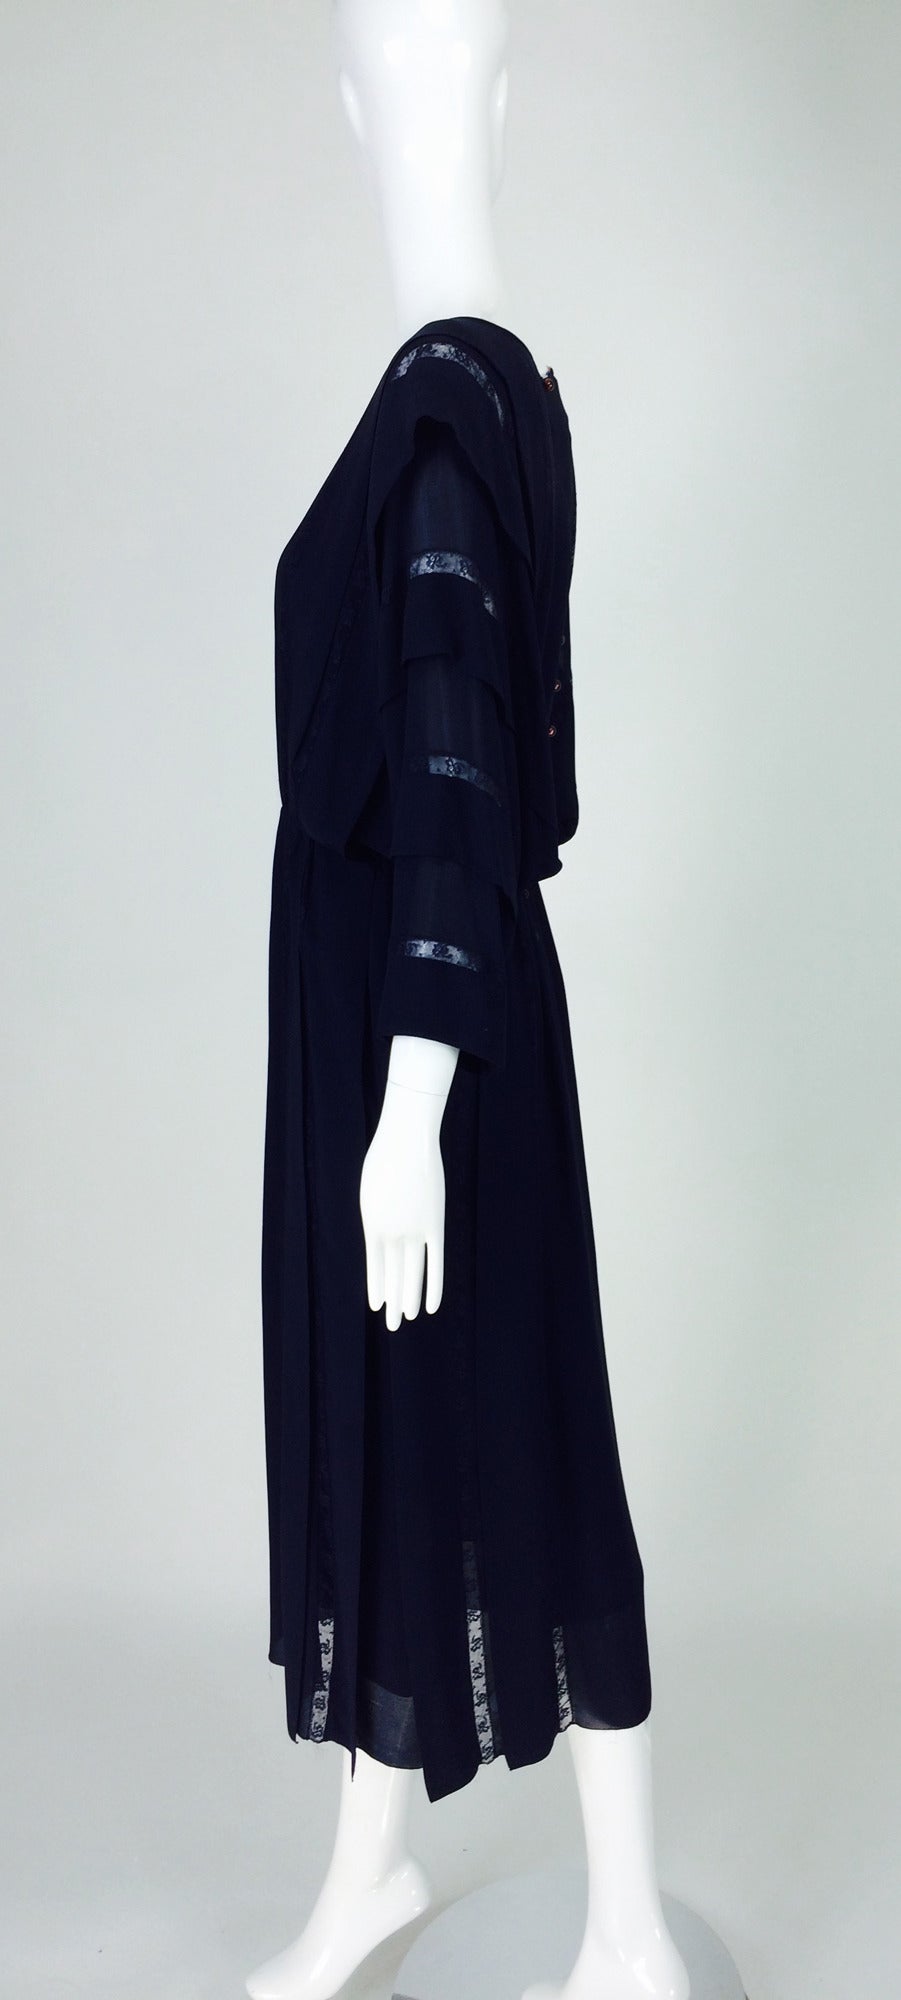 Women's Chloe by Karl Lagerfeld blue chiffon lace insertion dress early 1980s